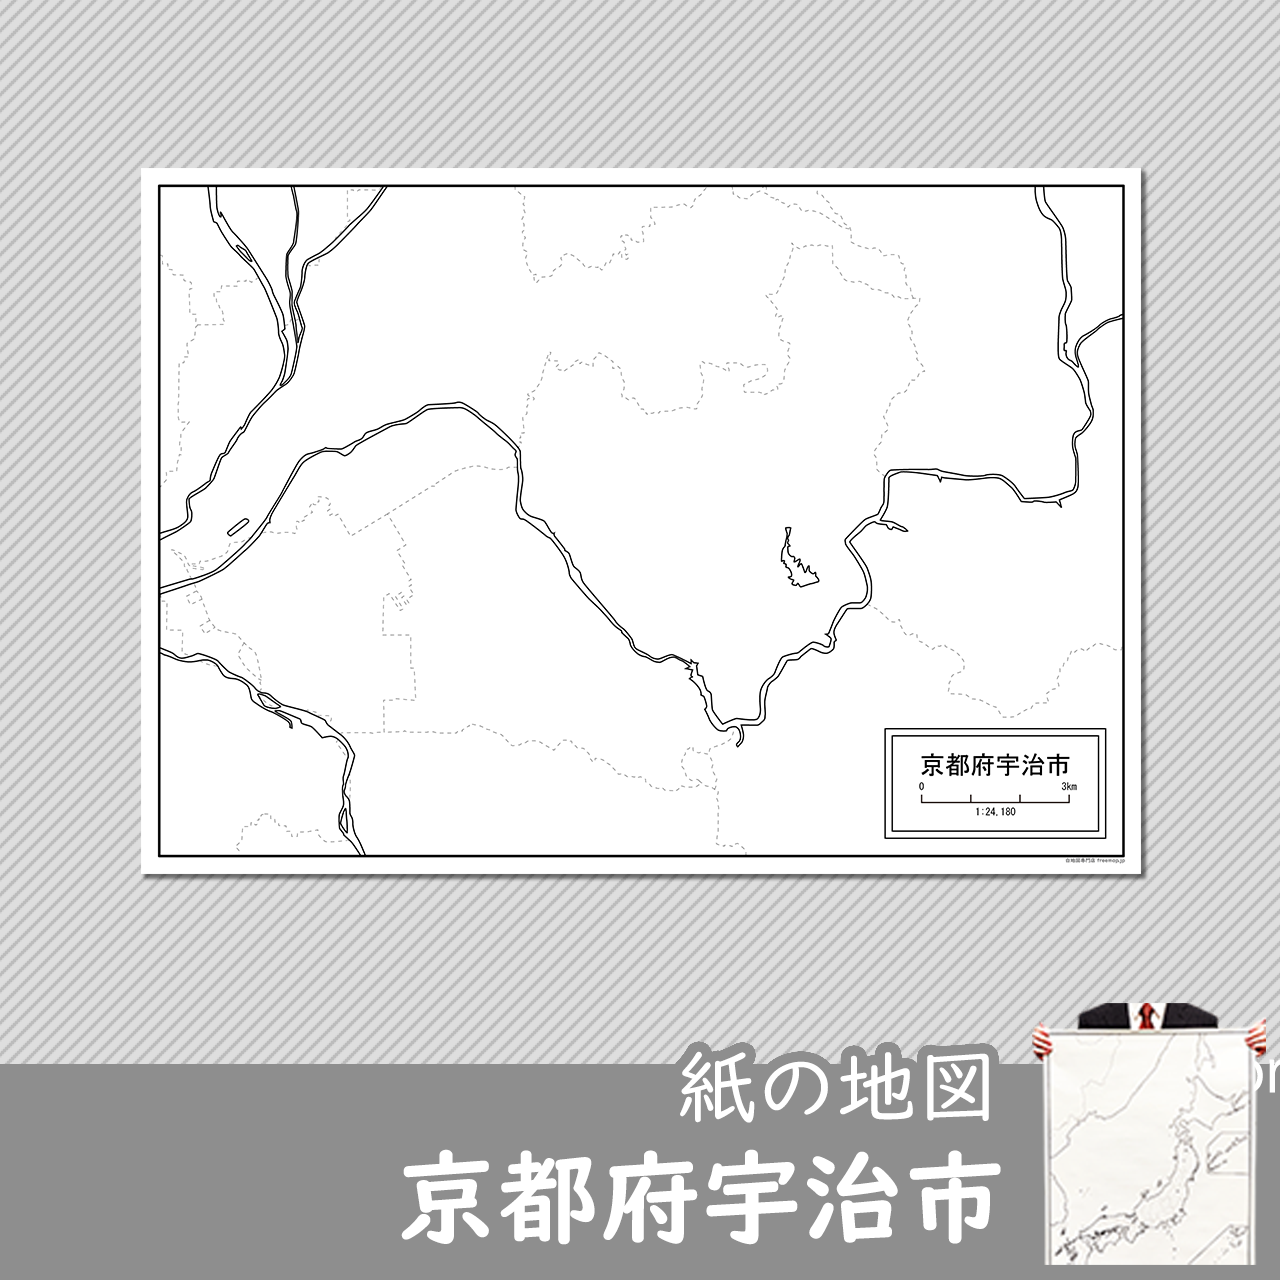 宇治市の紙の白地図のサムネイル